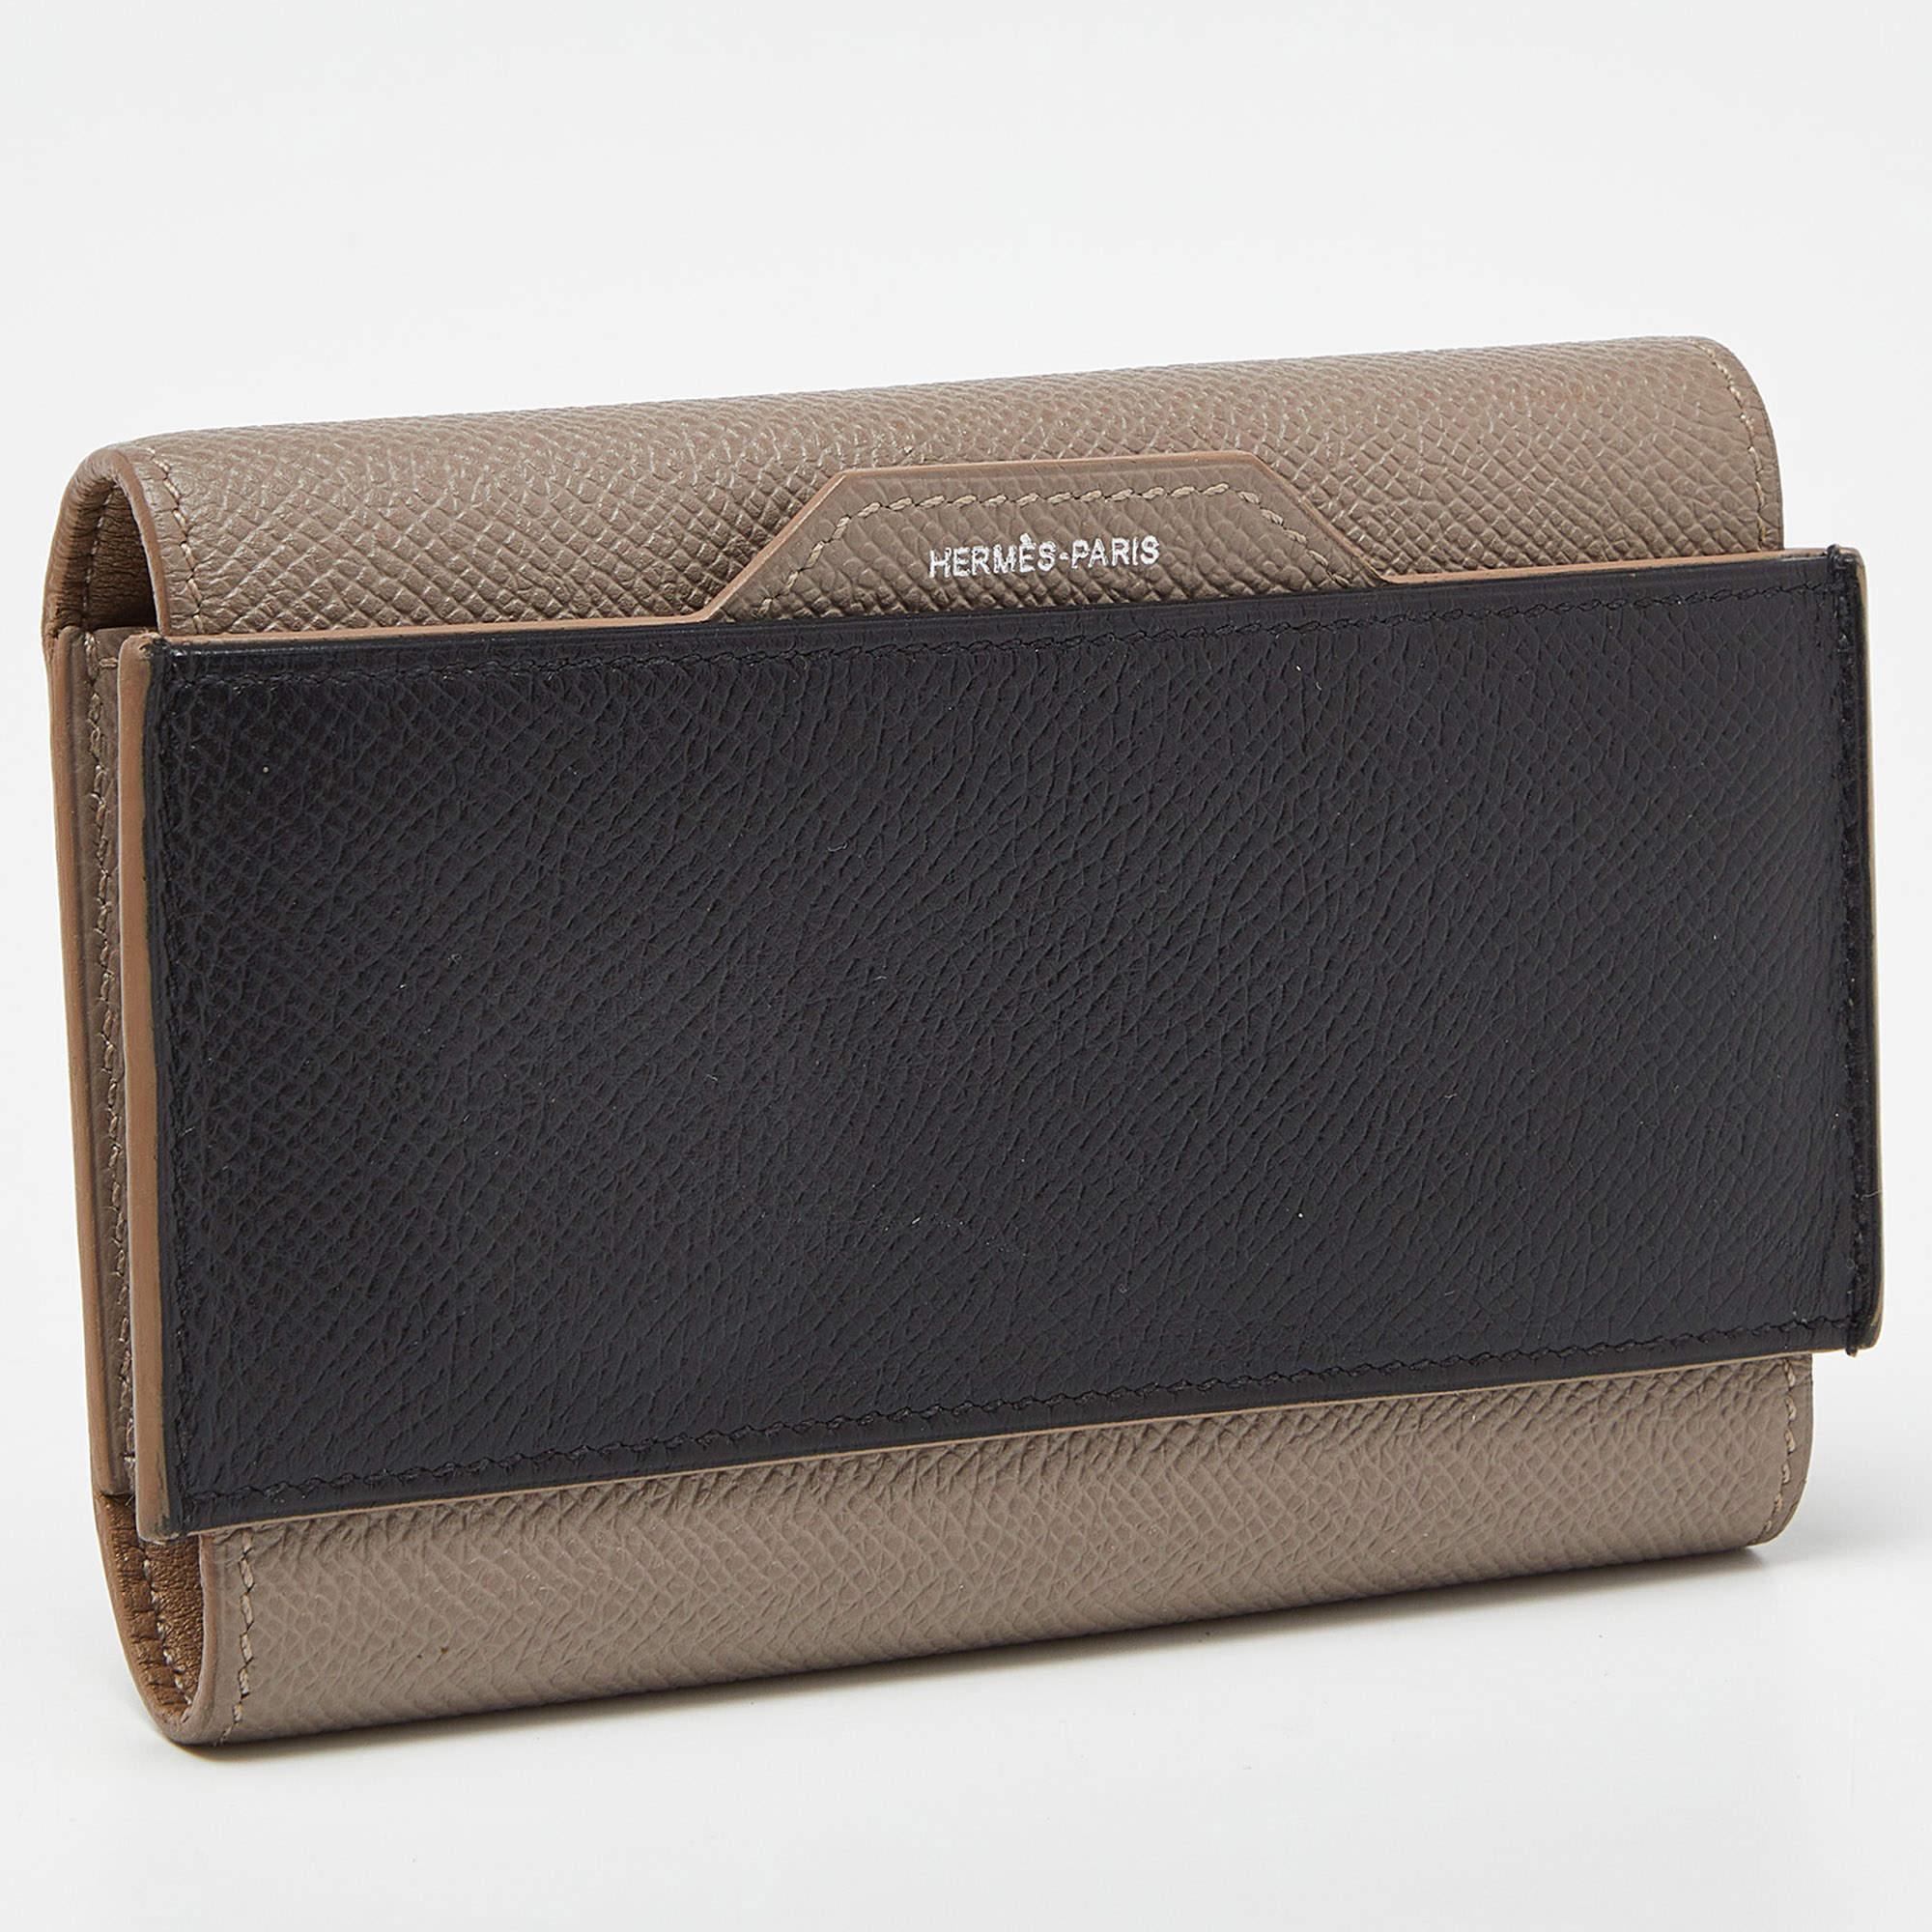 Hermès Etain/Black Epsom Leather Passant Compact Wallet In Good Condition For Sale In Dubai, Al Qouz 2